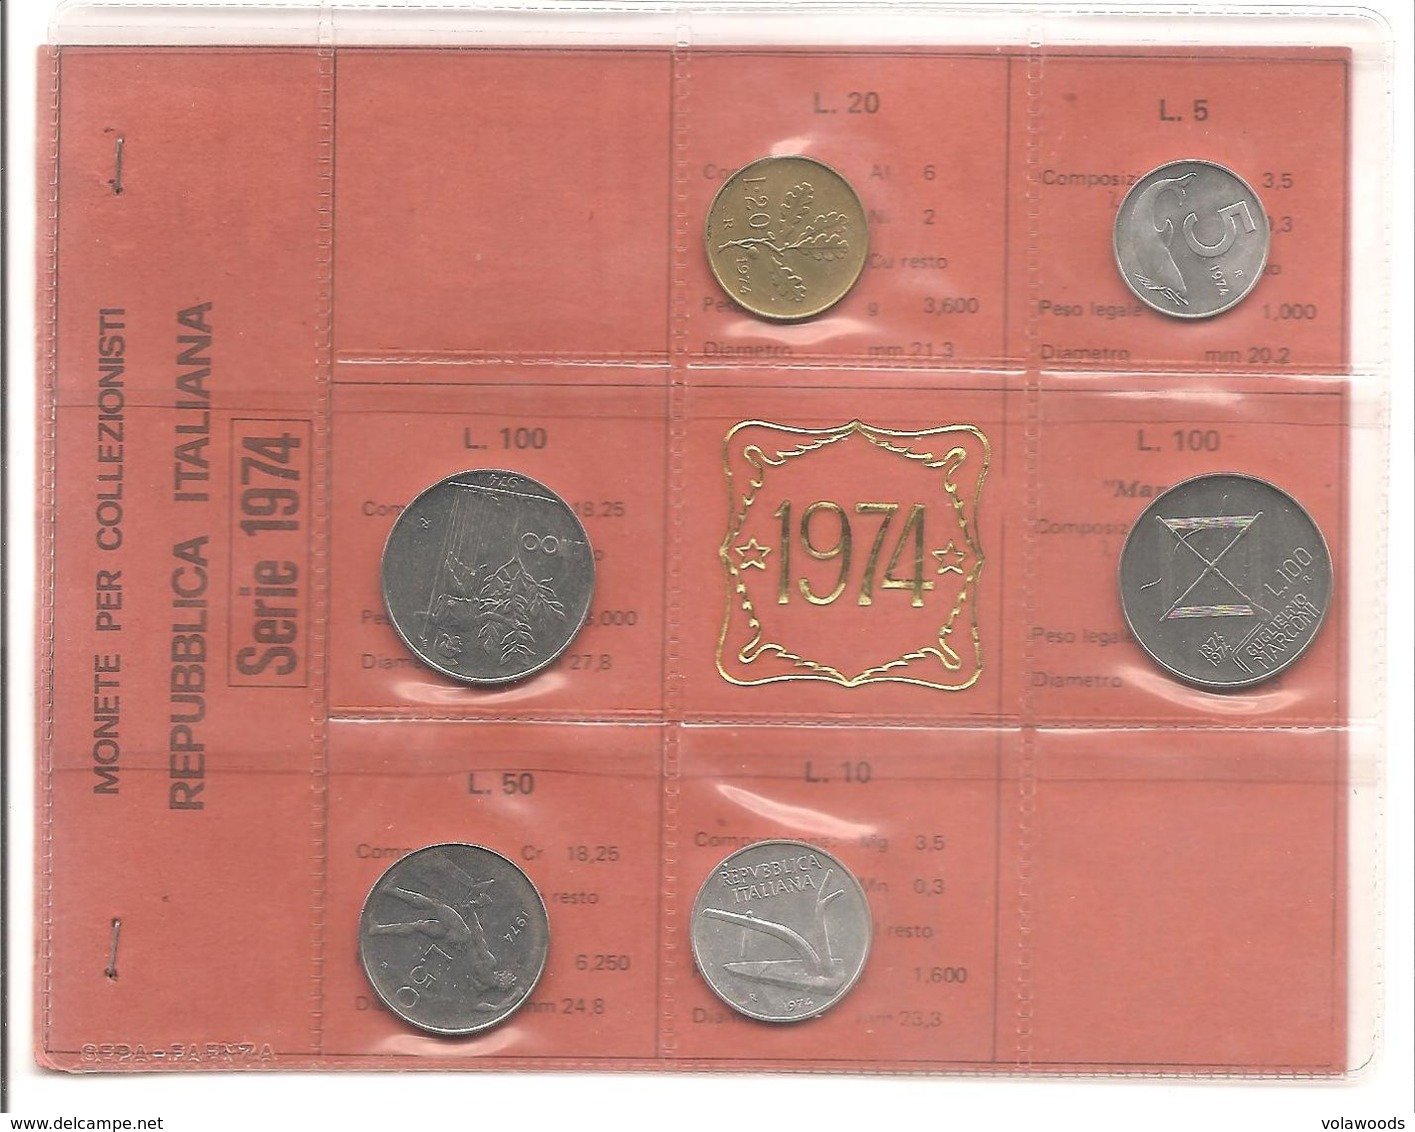 Italia - Serie Annuale In Confezione FDC 6 Monete - 1974 - Mint Sets & Proof Sets